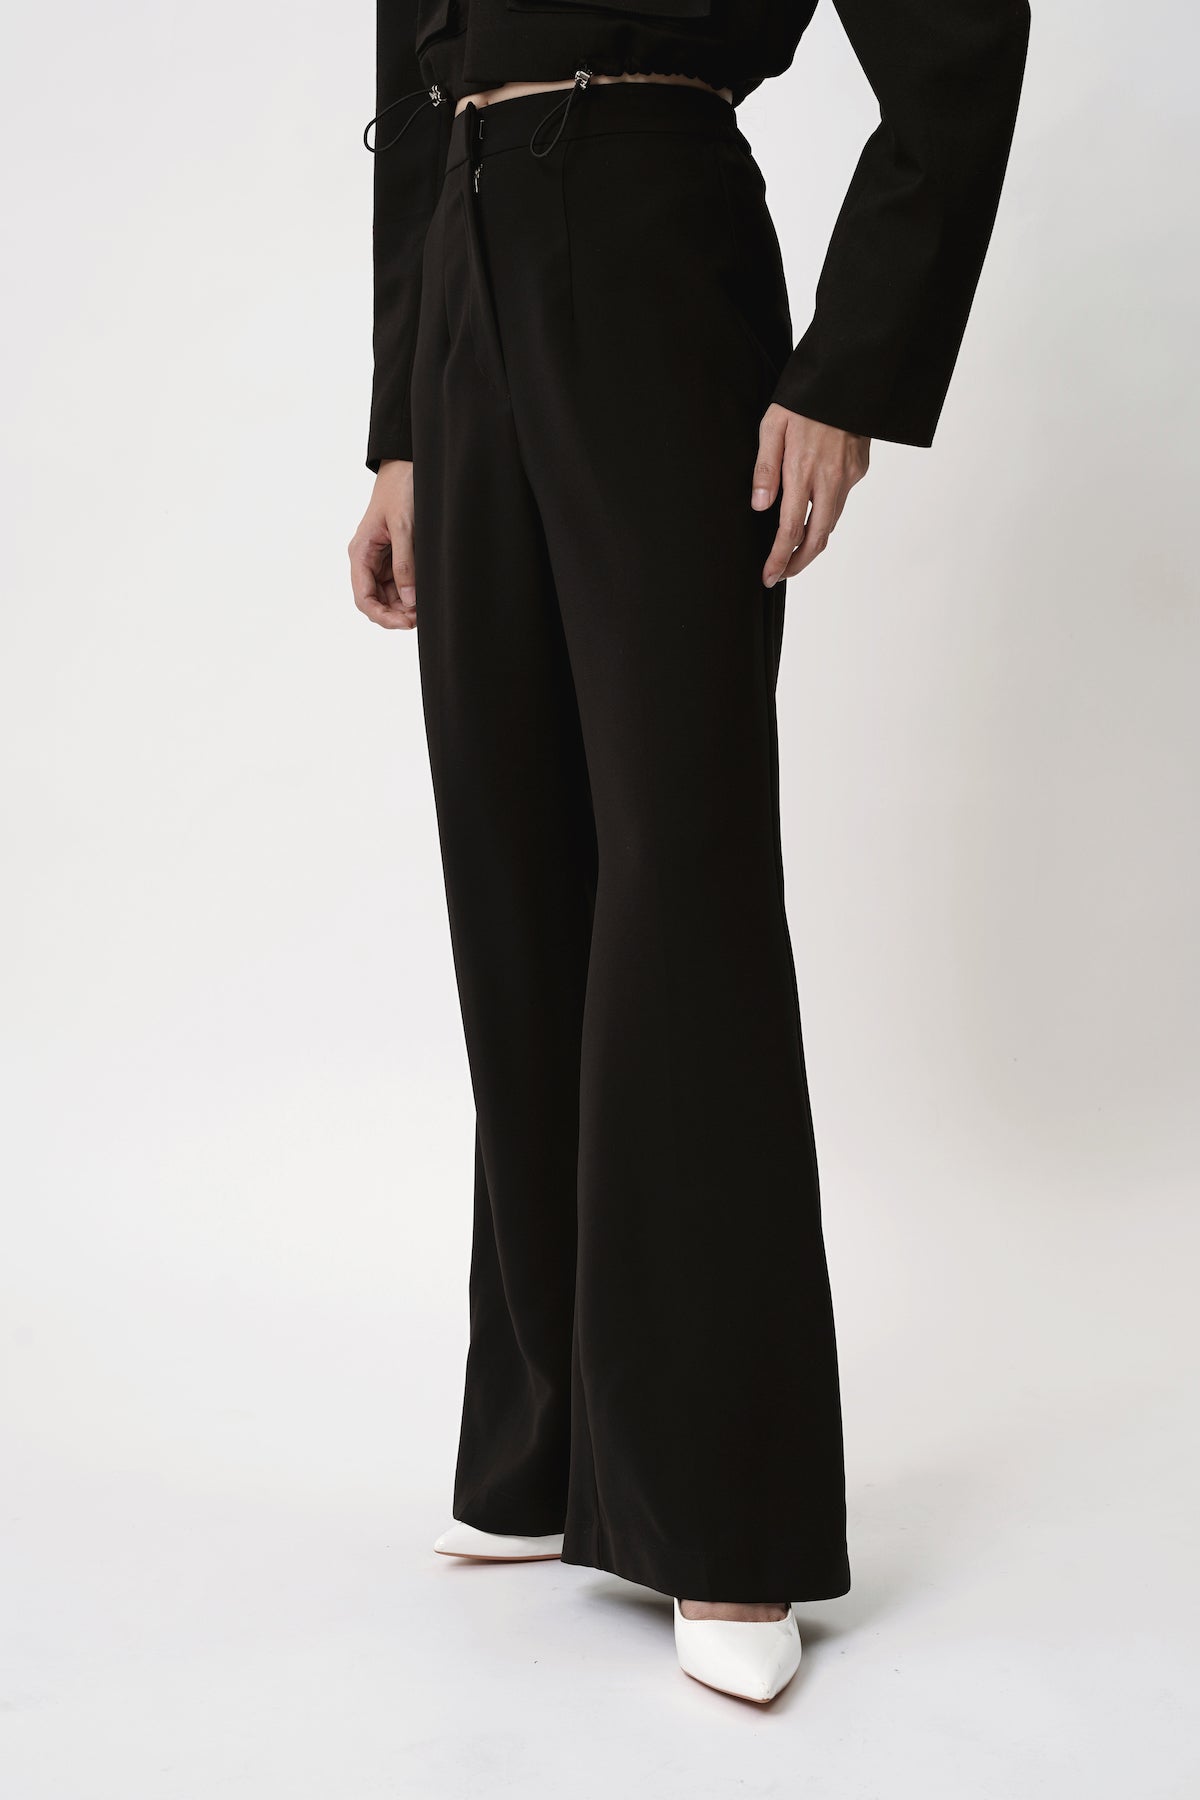 Gloo High-Waist Slight Flare Trouser In Black